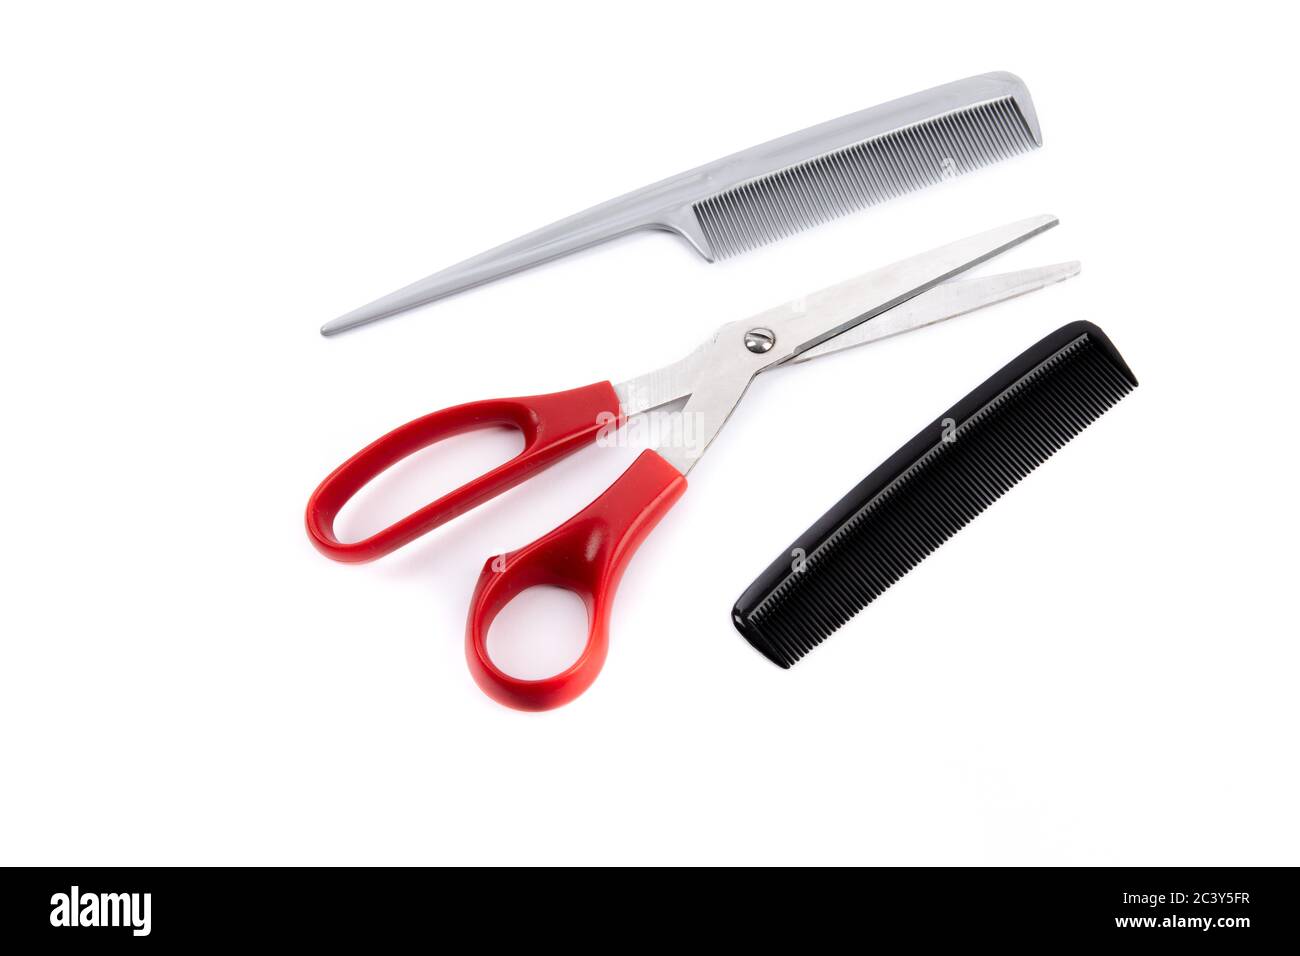 herramientas de corte de pelo, incluidas tijeras de mango rojo y dos peines aislados en blanco Foto de stock